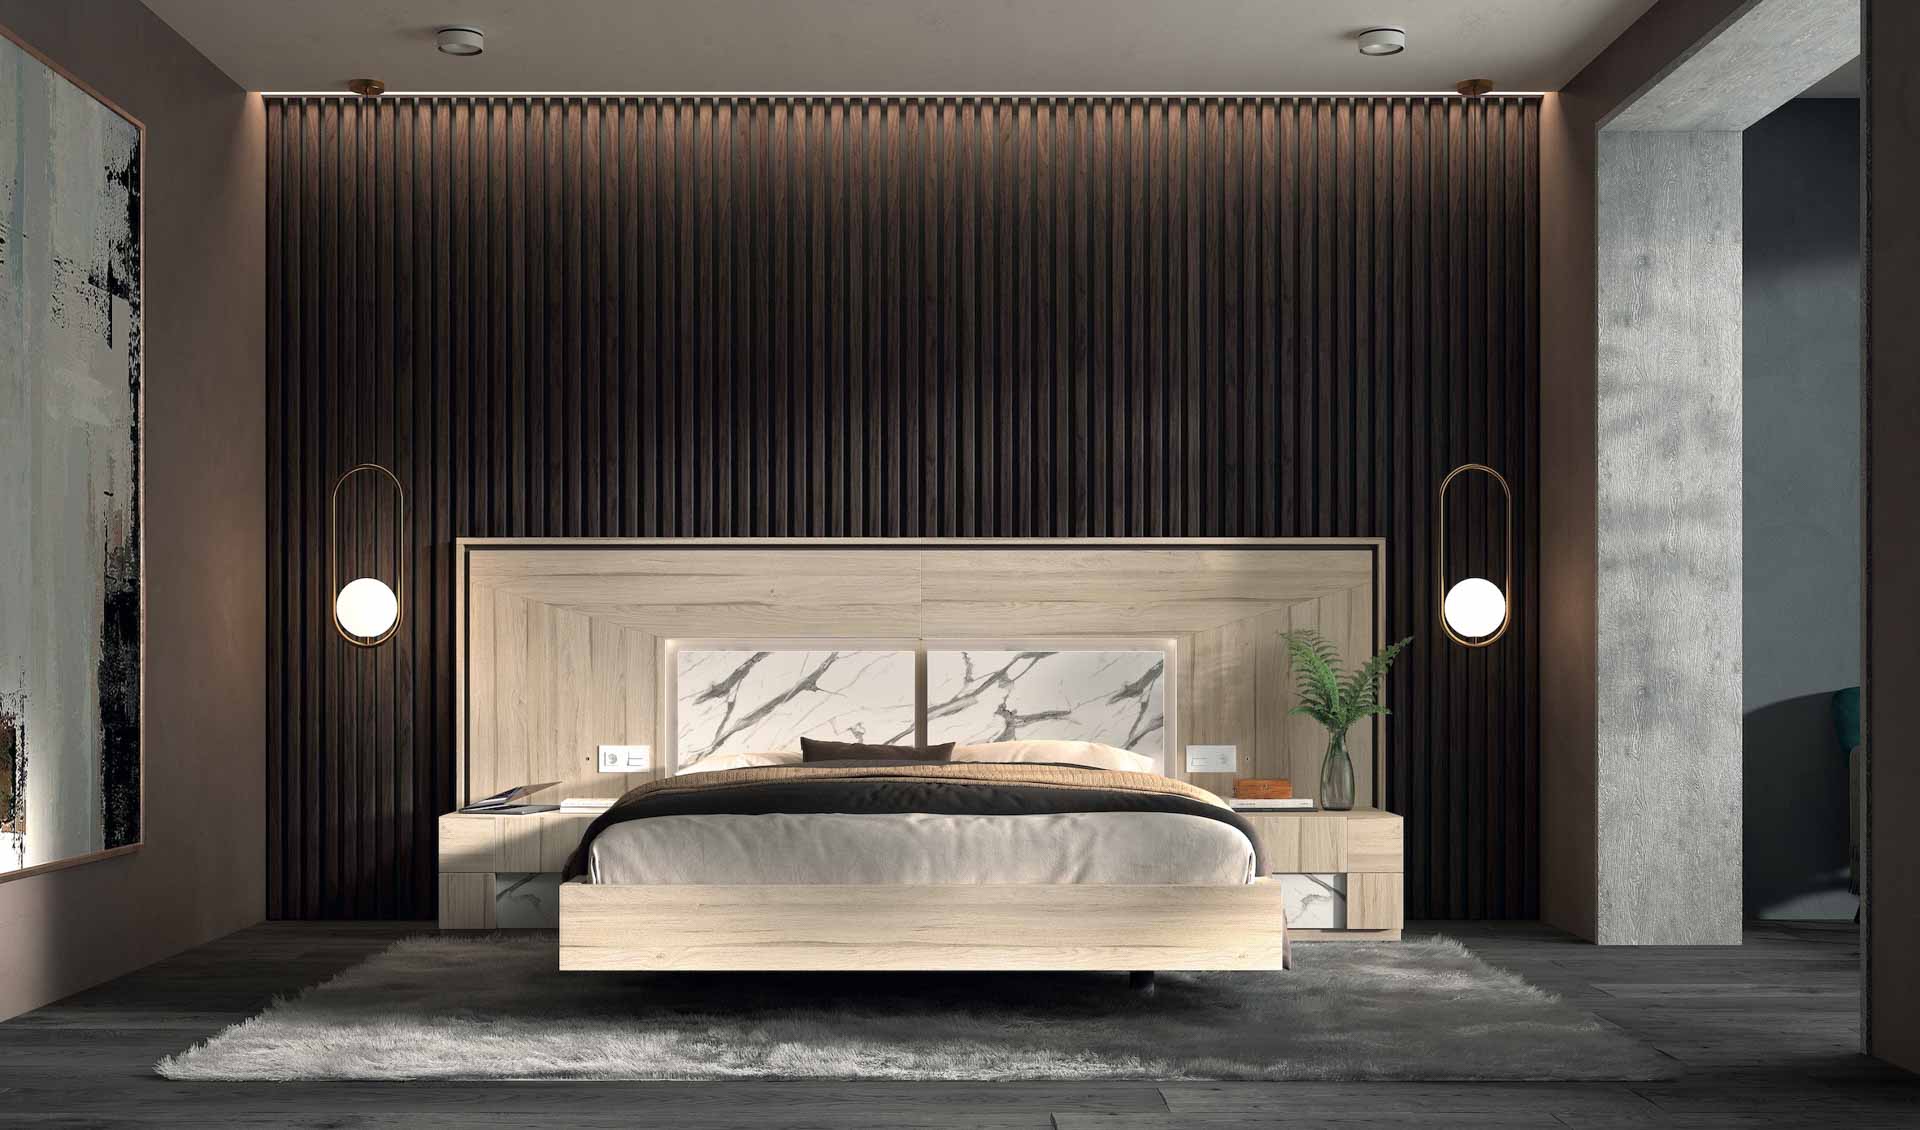 Diseño de mobiliario de dormitorio 72